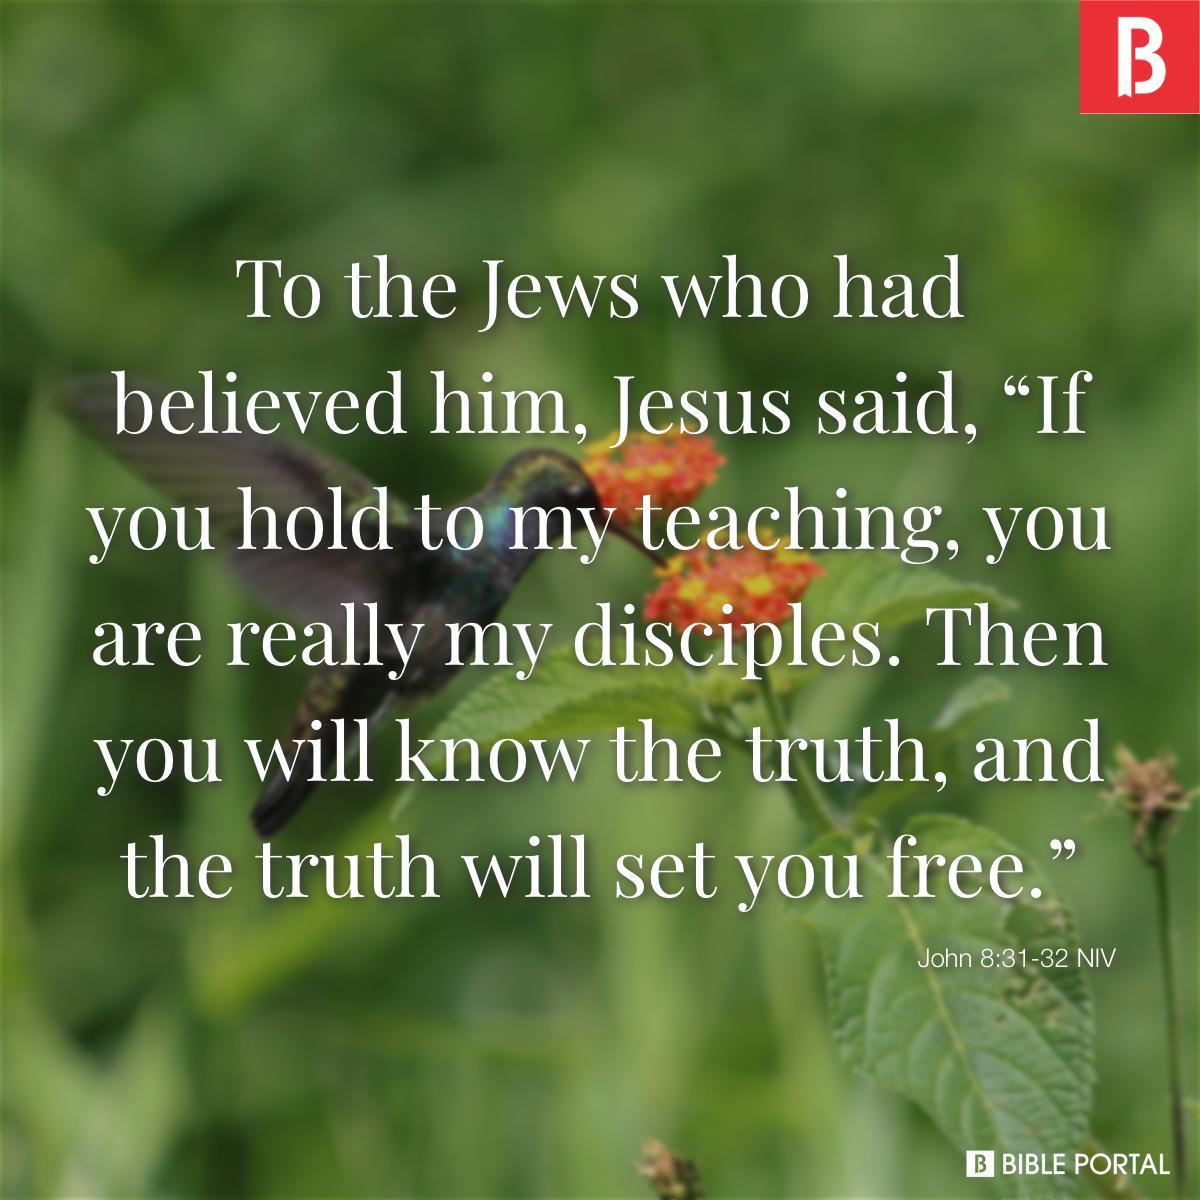 John 8:31-32 NIV